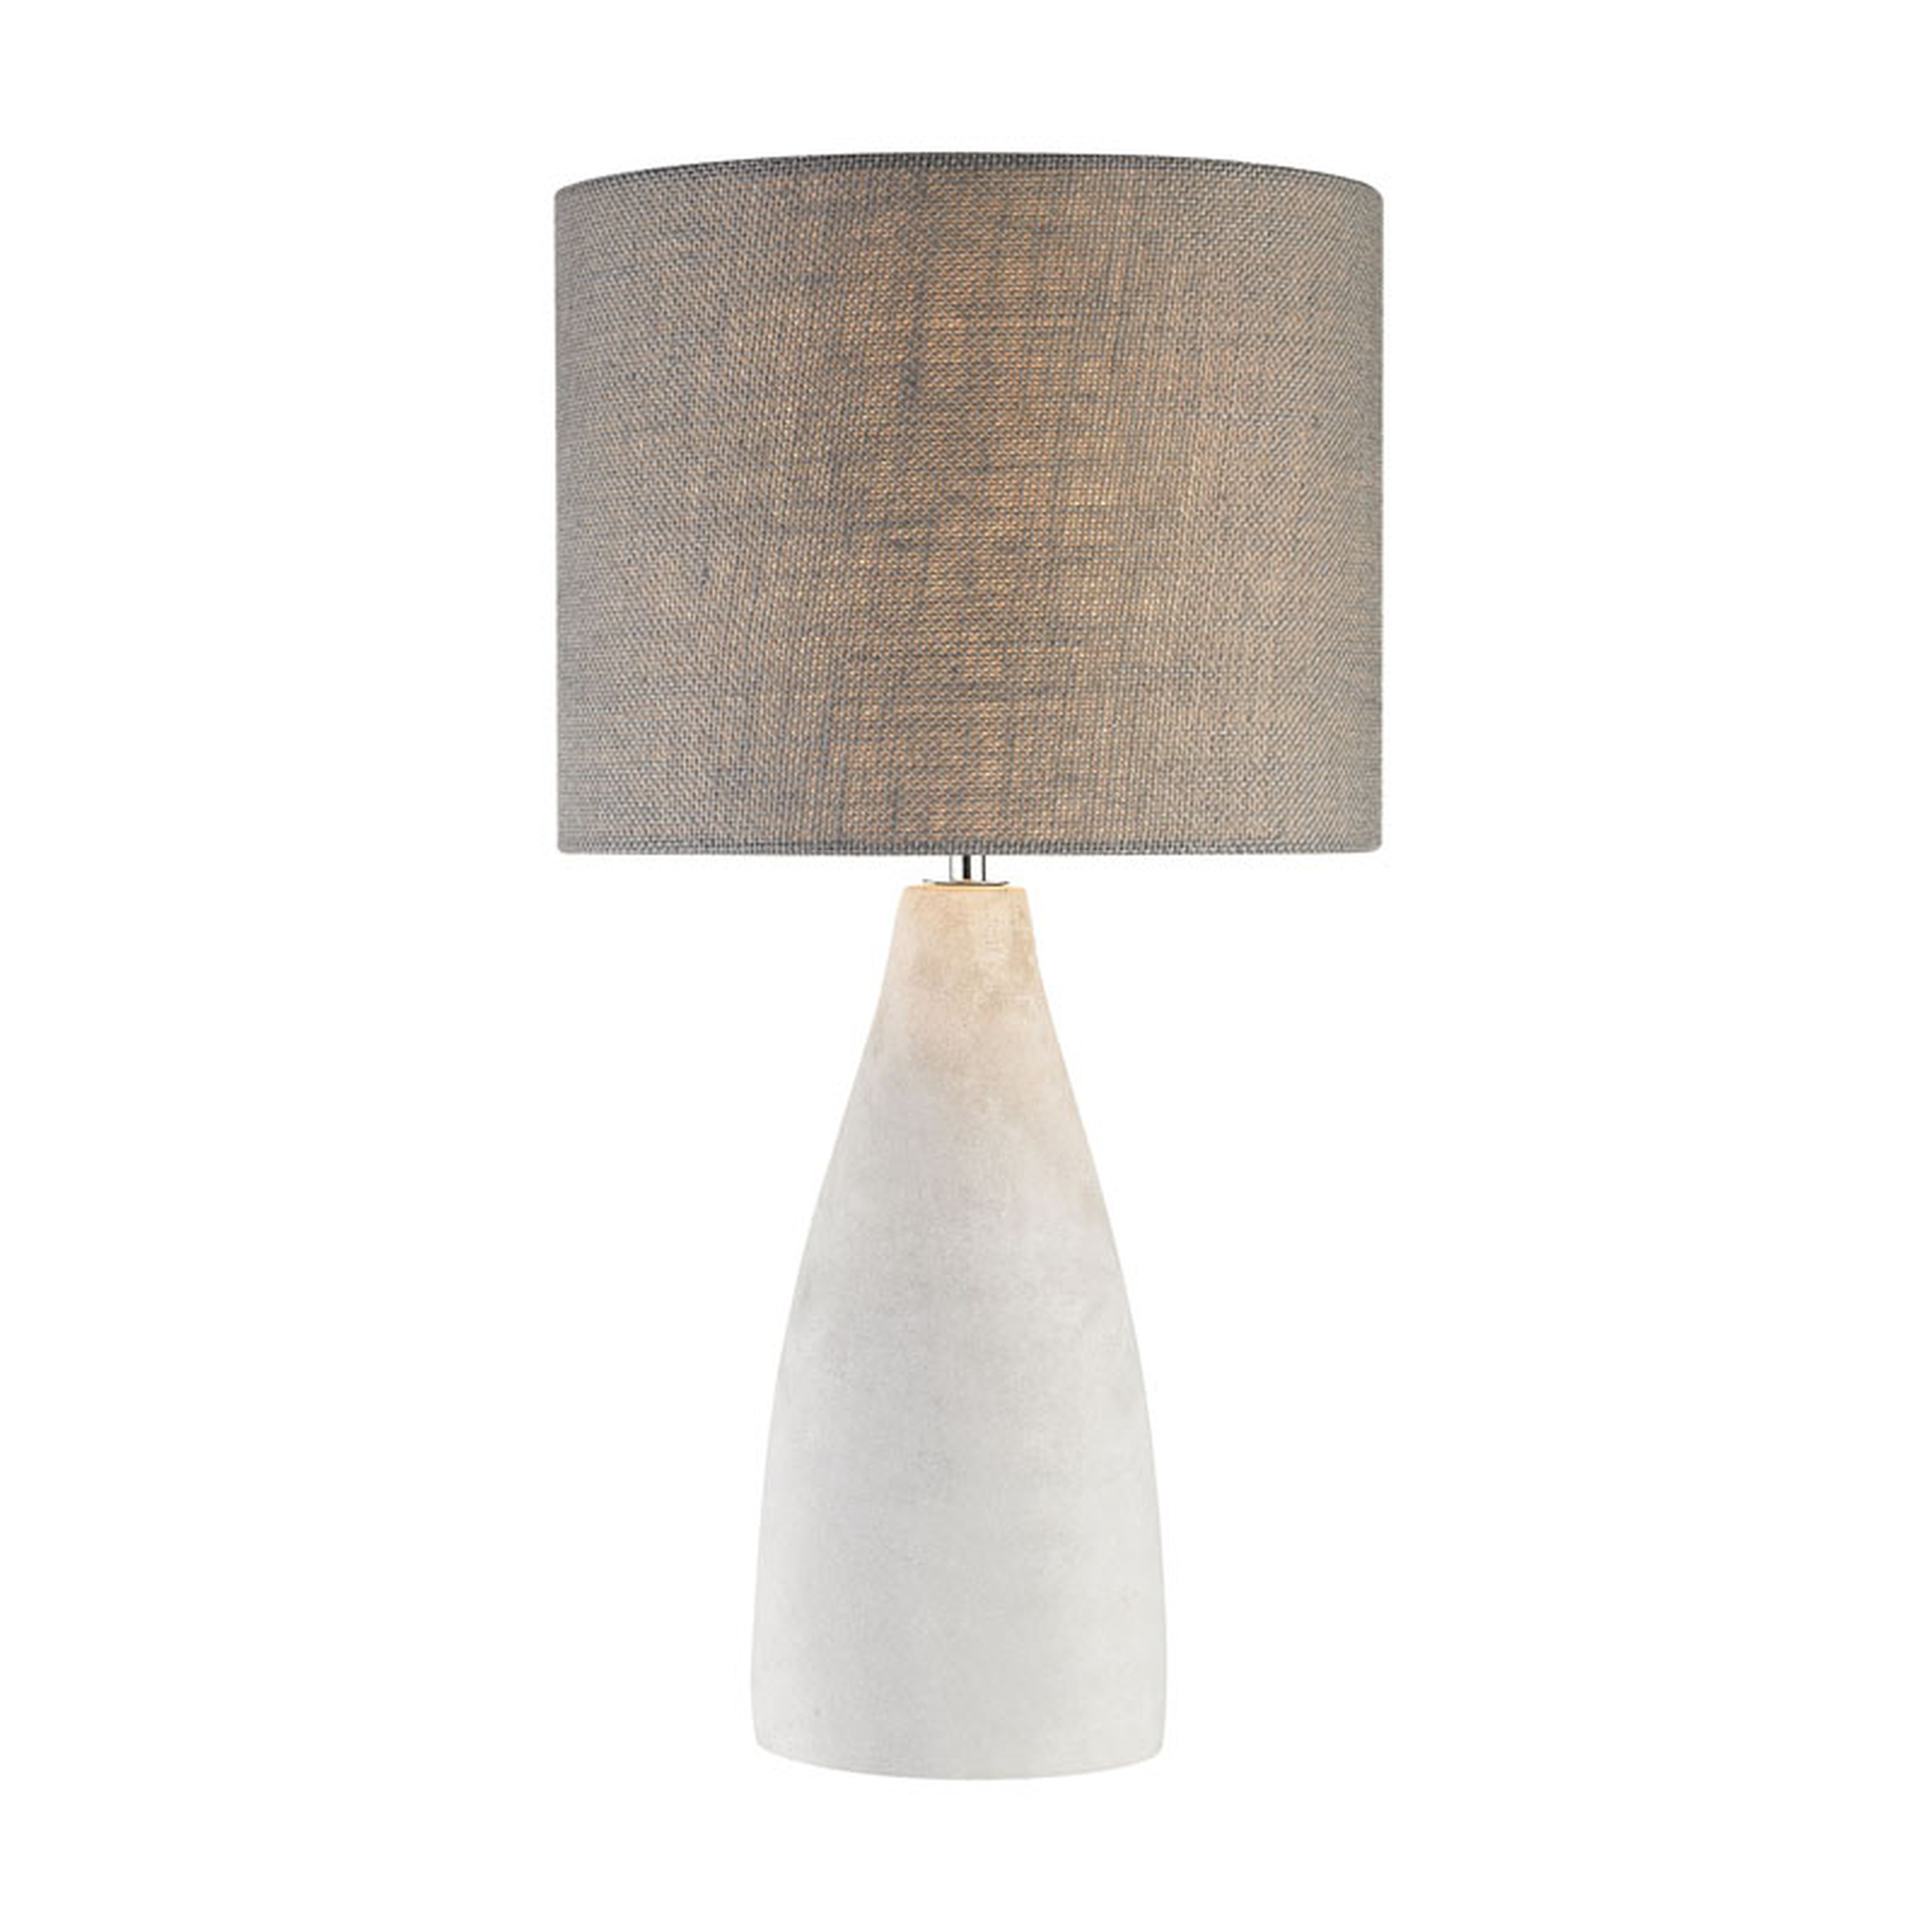 Rockport Light Table Lamp, Polished Concrete - Elk Home